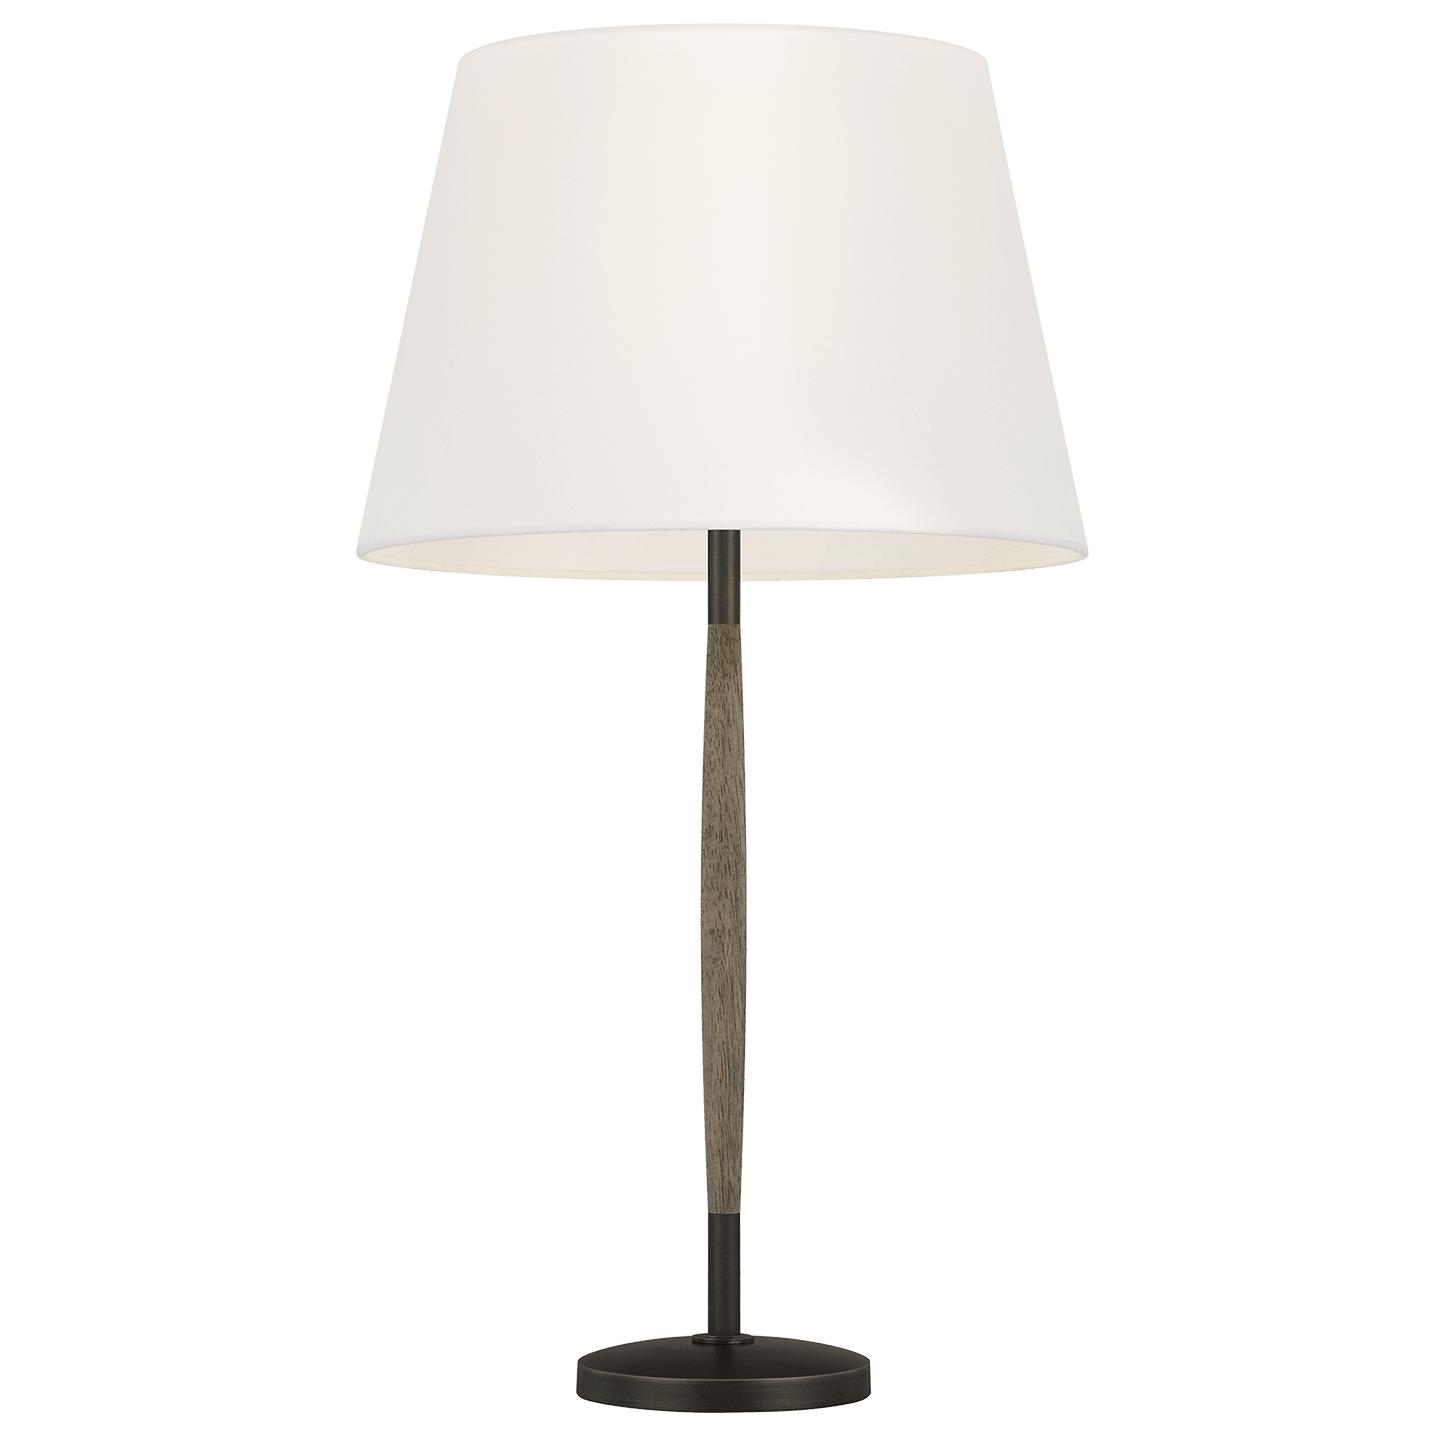 Купить Настольная лампа Ferrelli Table Lamp в интернет-магазине roooms.ru